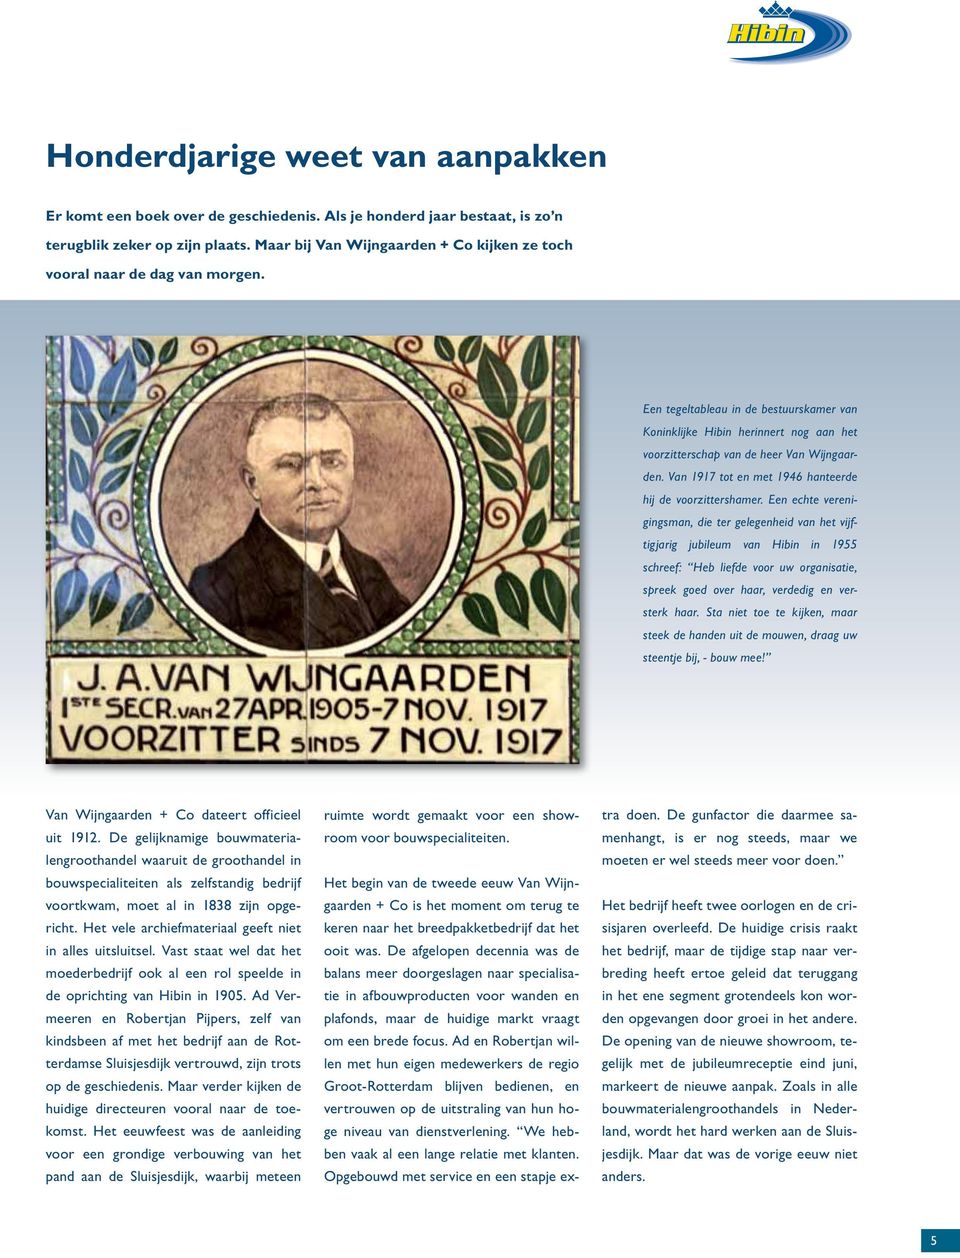 Een tegeltableau in de bestuurskamer van Koninklijke Hibin herinnert nog aan het voorzitterschap van de heer Van Wijngaarden. Van 1917 tot en met 1946 hanteerde hij de voorzittershamer.